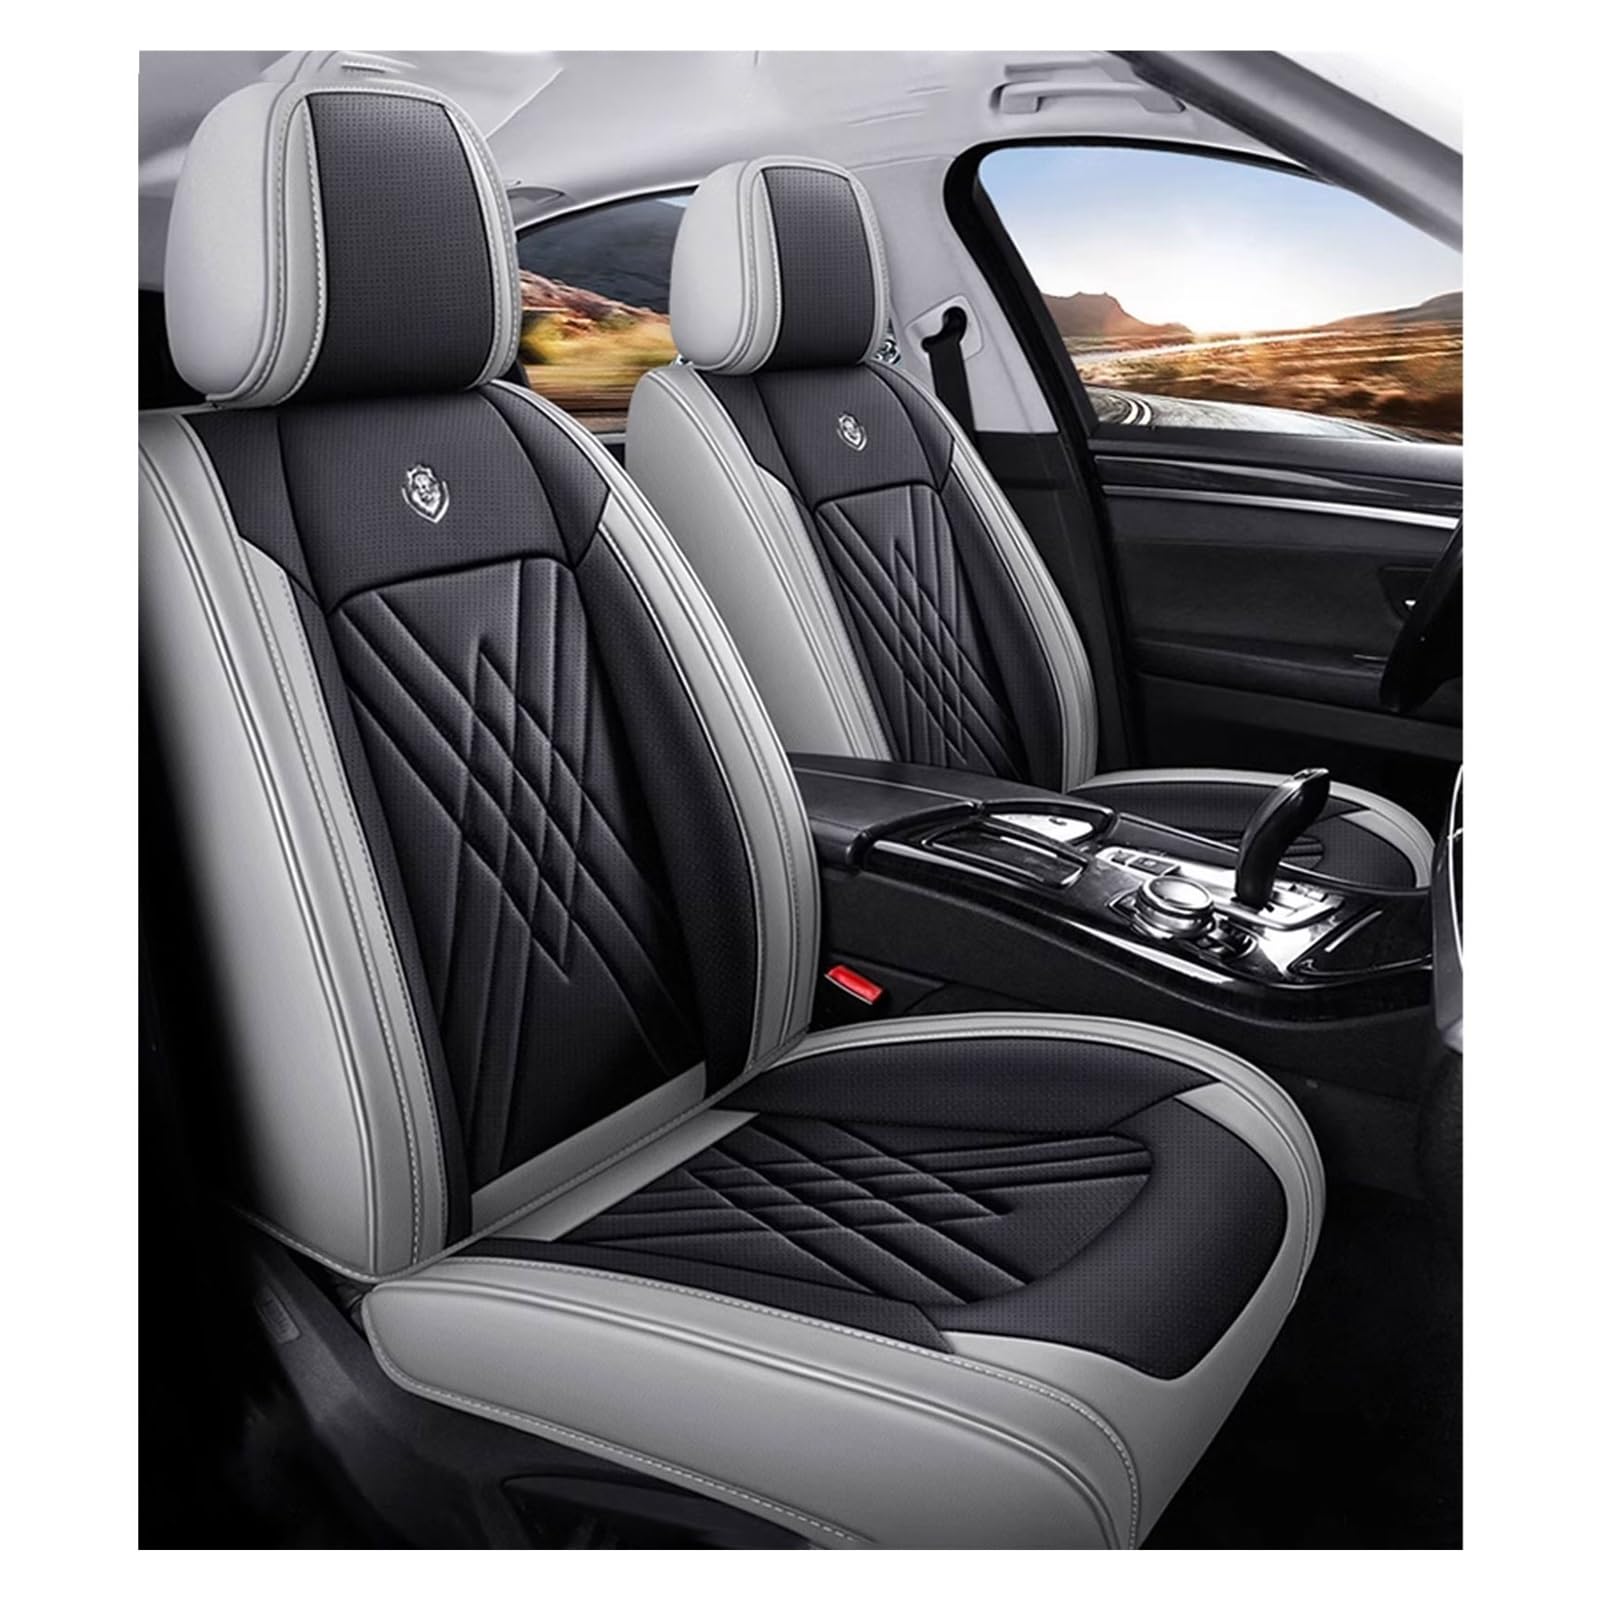 ZARUXCHA Universal-Sitzbezug Komplett-Set Für Citroen C3 c3 Aircross SUV Live/Feel/Feel Pack/C-Series/Shine, AutositzbezüGe Set Leder, 5-Sitze Universal-SitzbezüGe Auto Komplettset(B(Greyish Black)) von ZARUXCHA